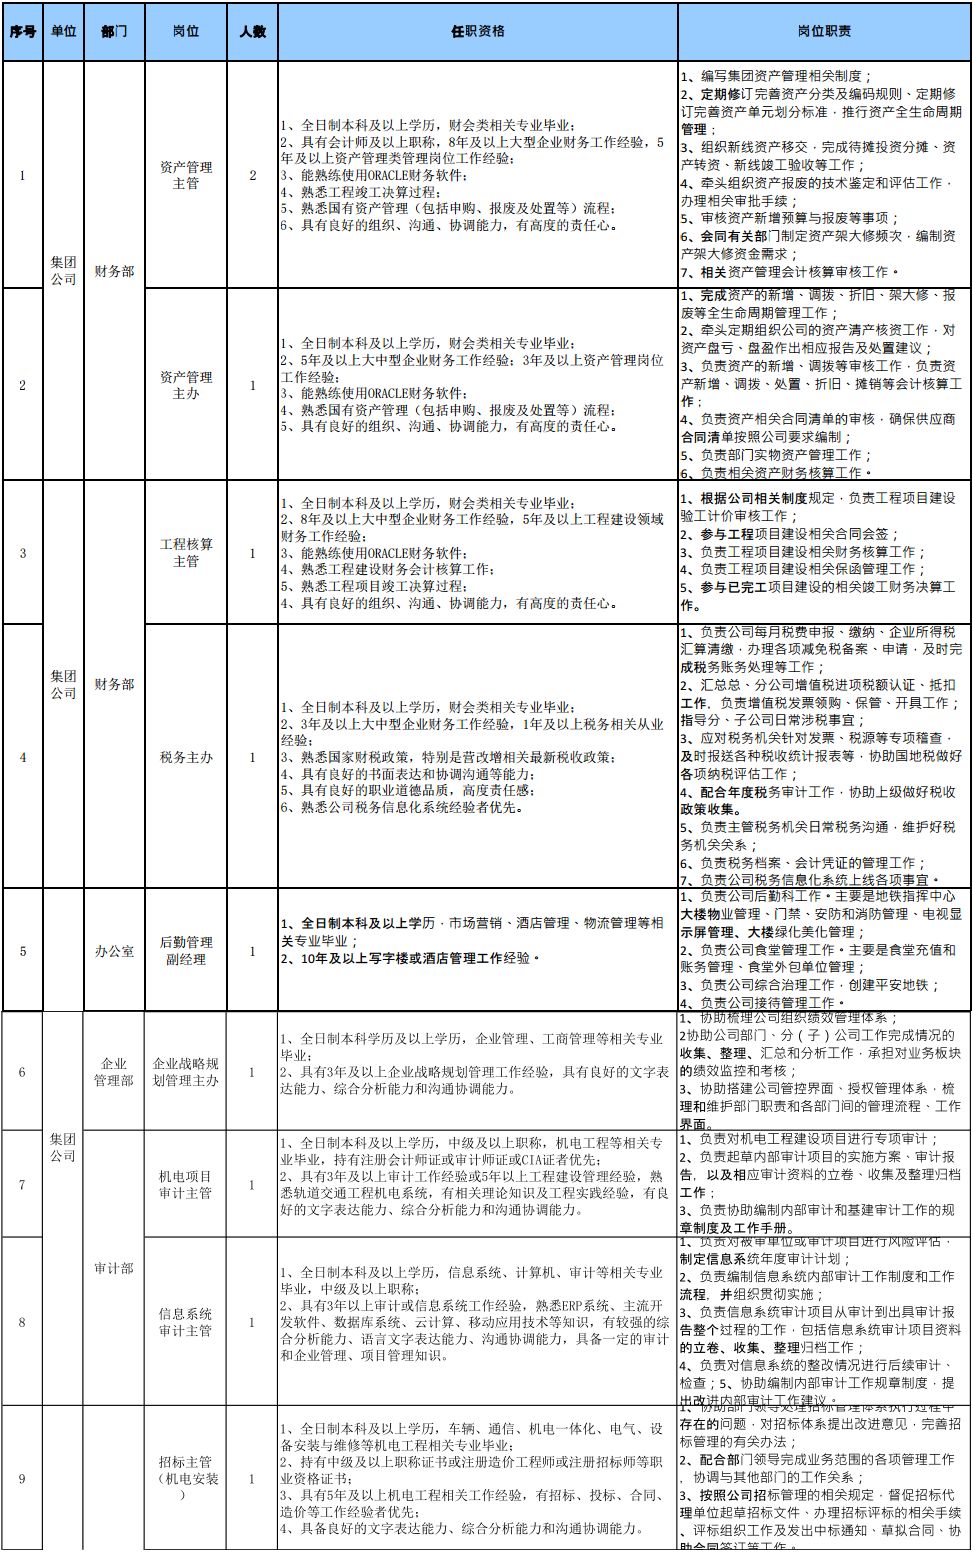 福州地铁集团有限公司2018年招聘公告(一)(